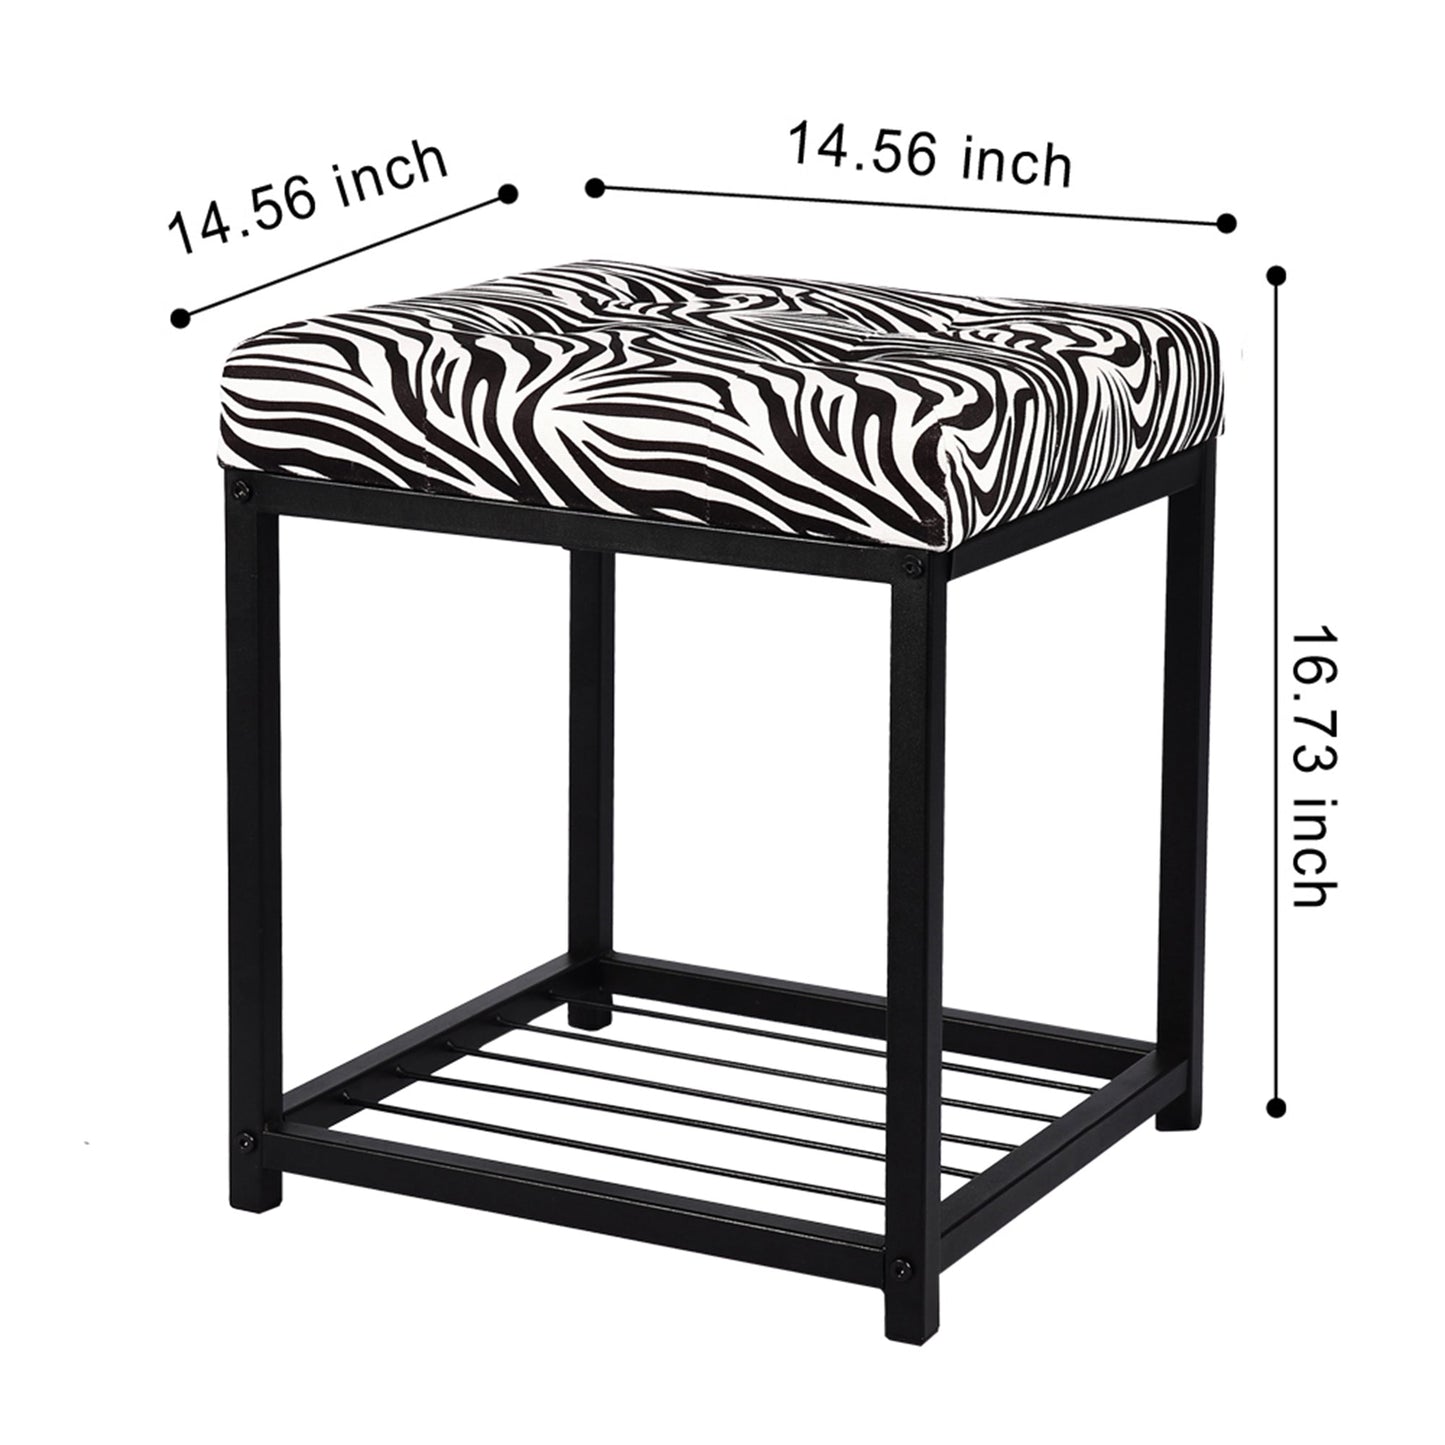 Square Small Bench - Zebra